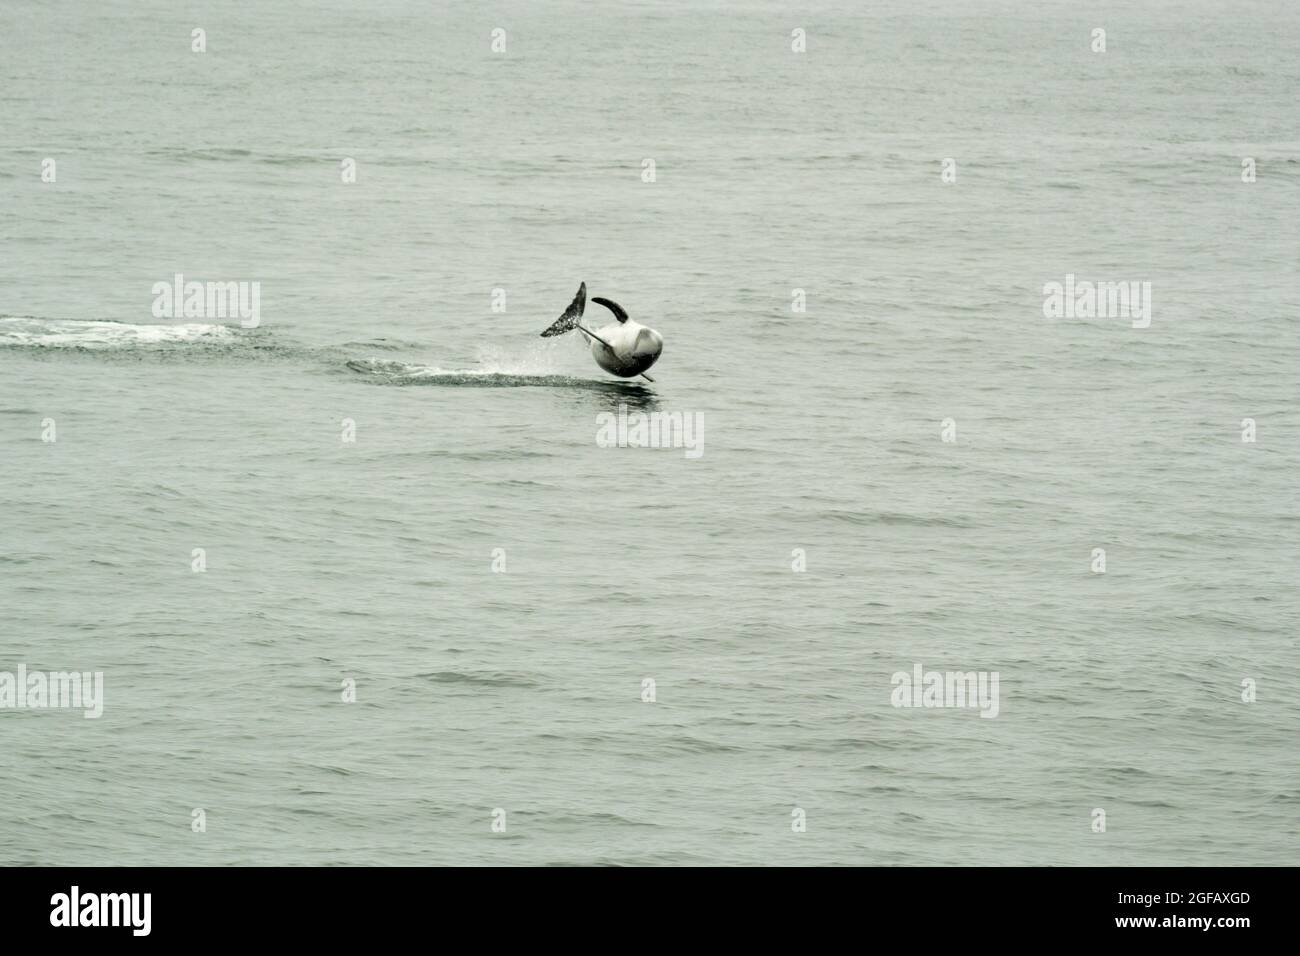 Il delfino Risso selvatico salta dall'acqua e gira sopra la superficie in una performance acrobatica in una giornata grigia. Foto Stock